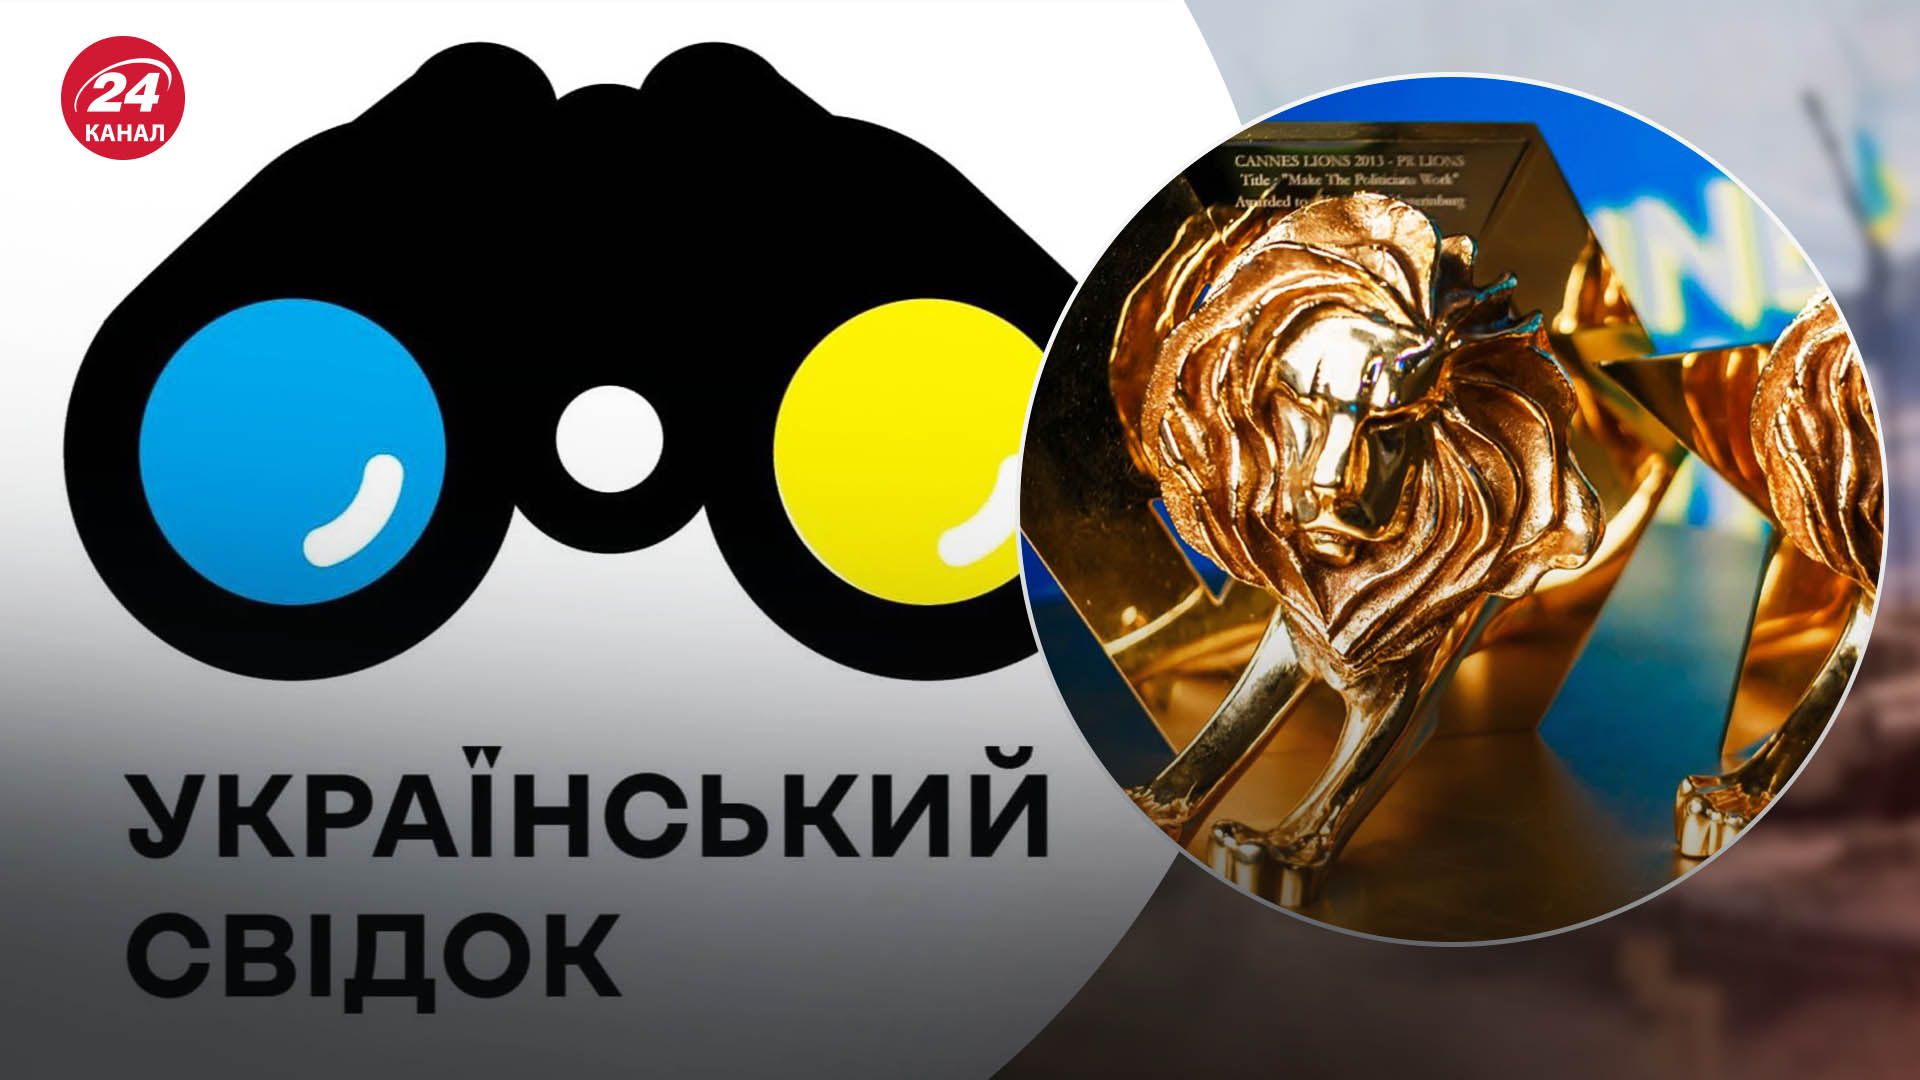 Креативный проект о войне в Украине получил Бронзового льва в Каннах: почему это важно - 24 Канал